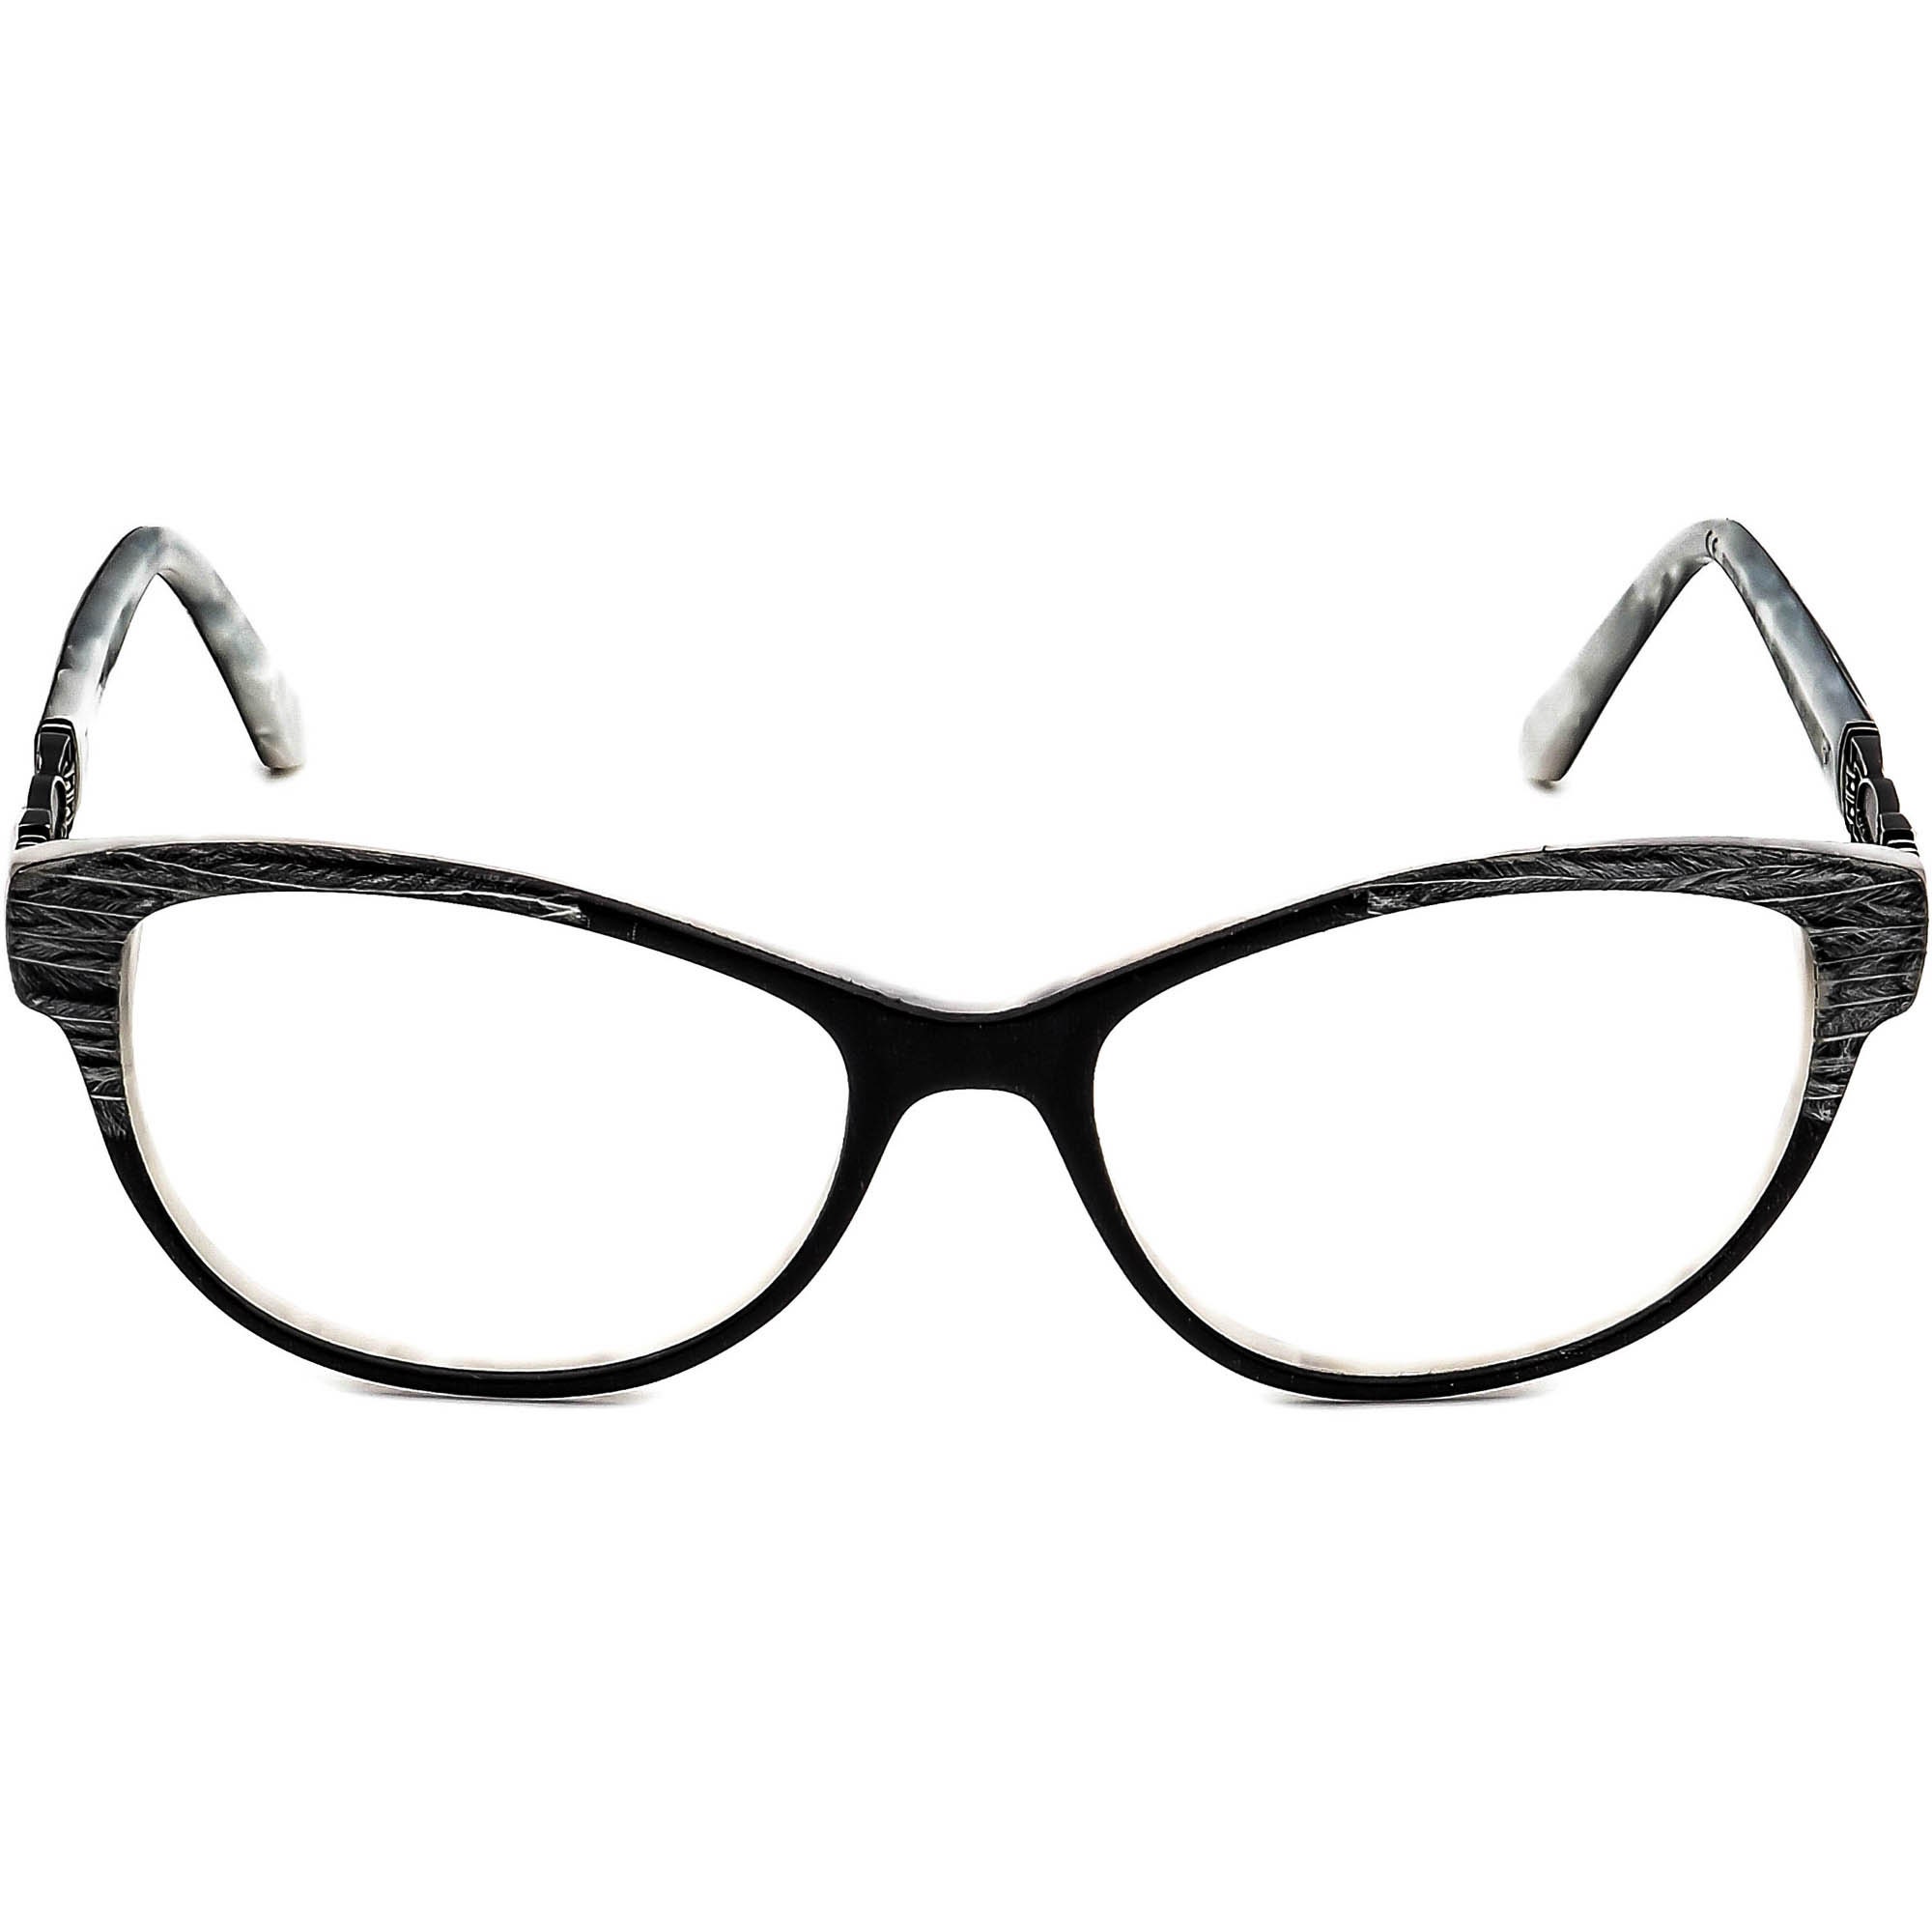 Chanel Women's Eyeglasses 3096-B c502 Tortoise Rectangular Frame